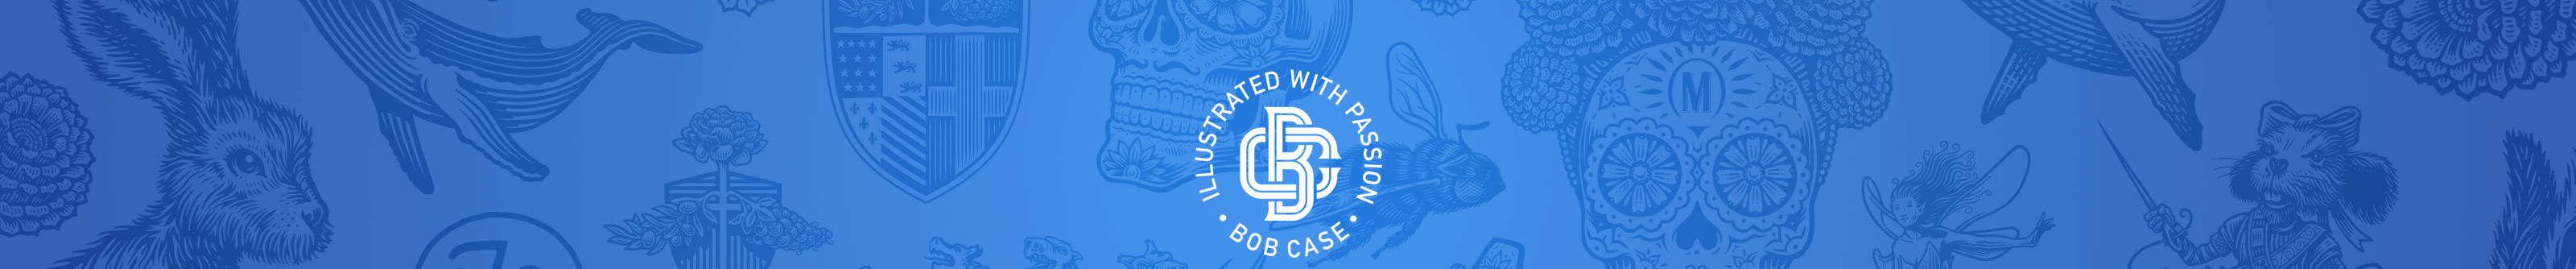 Bob Case's profile banner